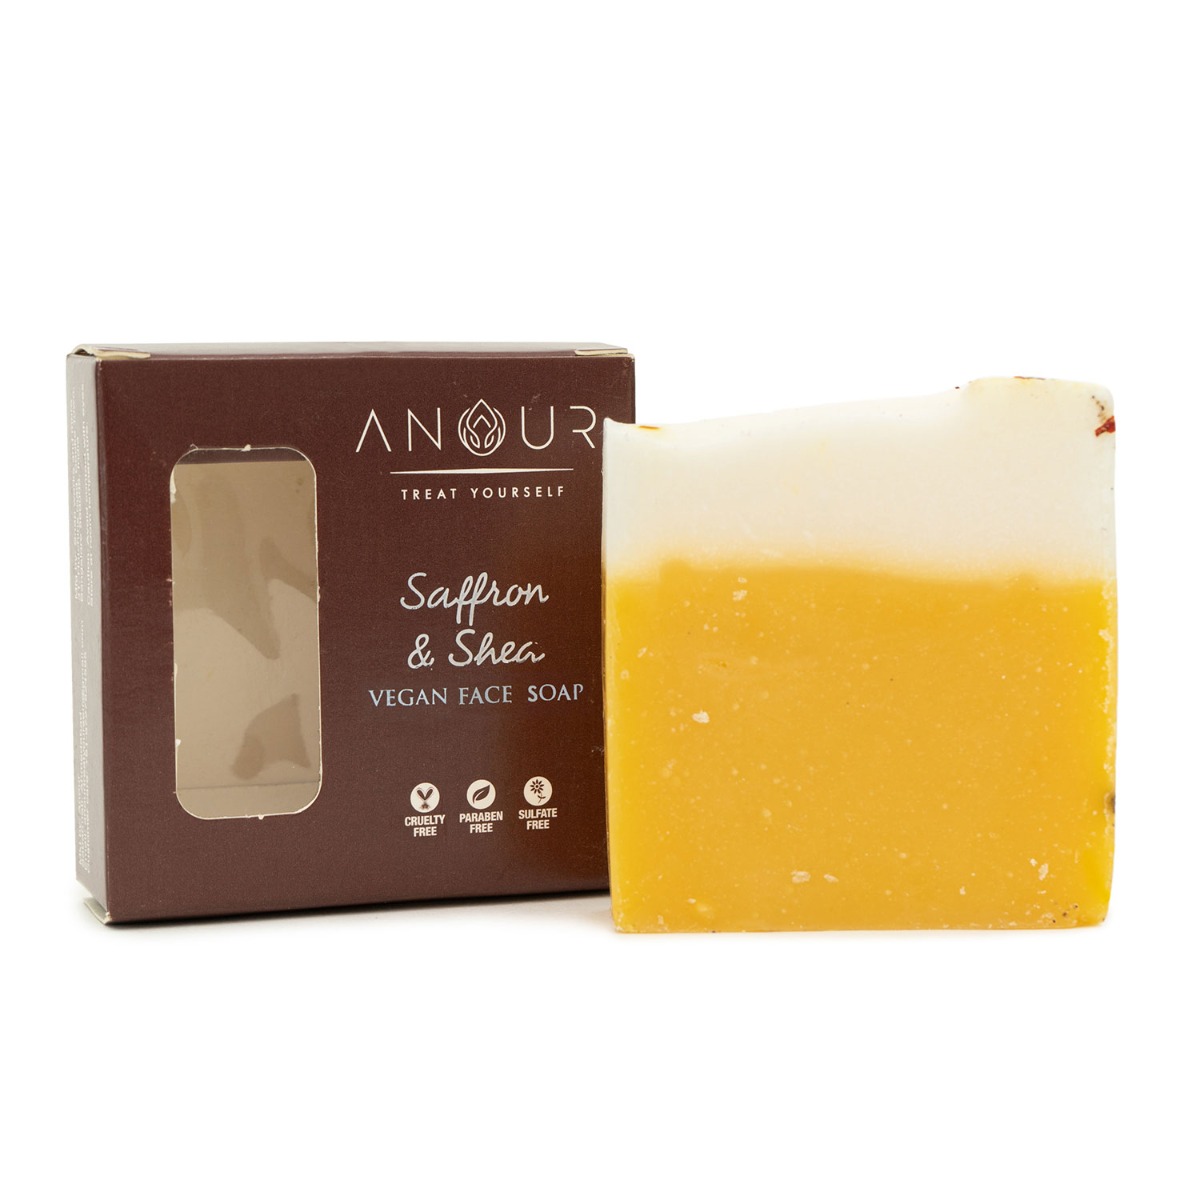 Anour Saffron & Shea Vegan Face Soap, 100gm